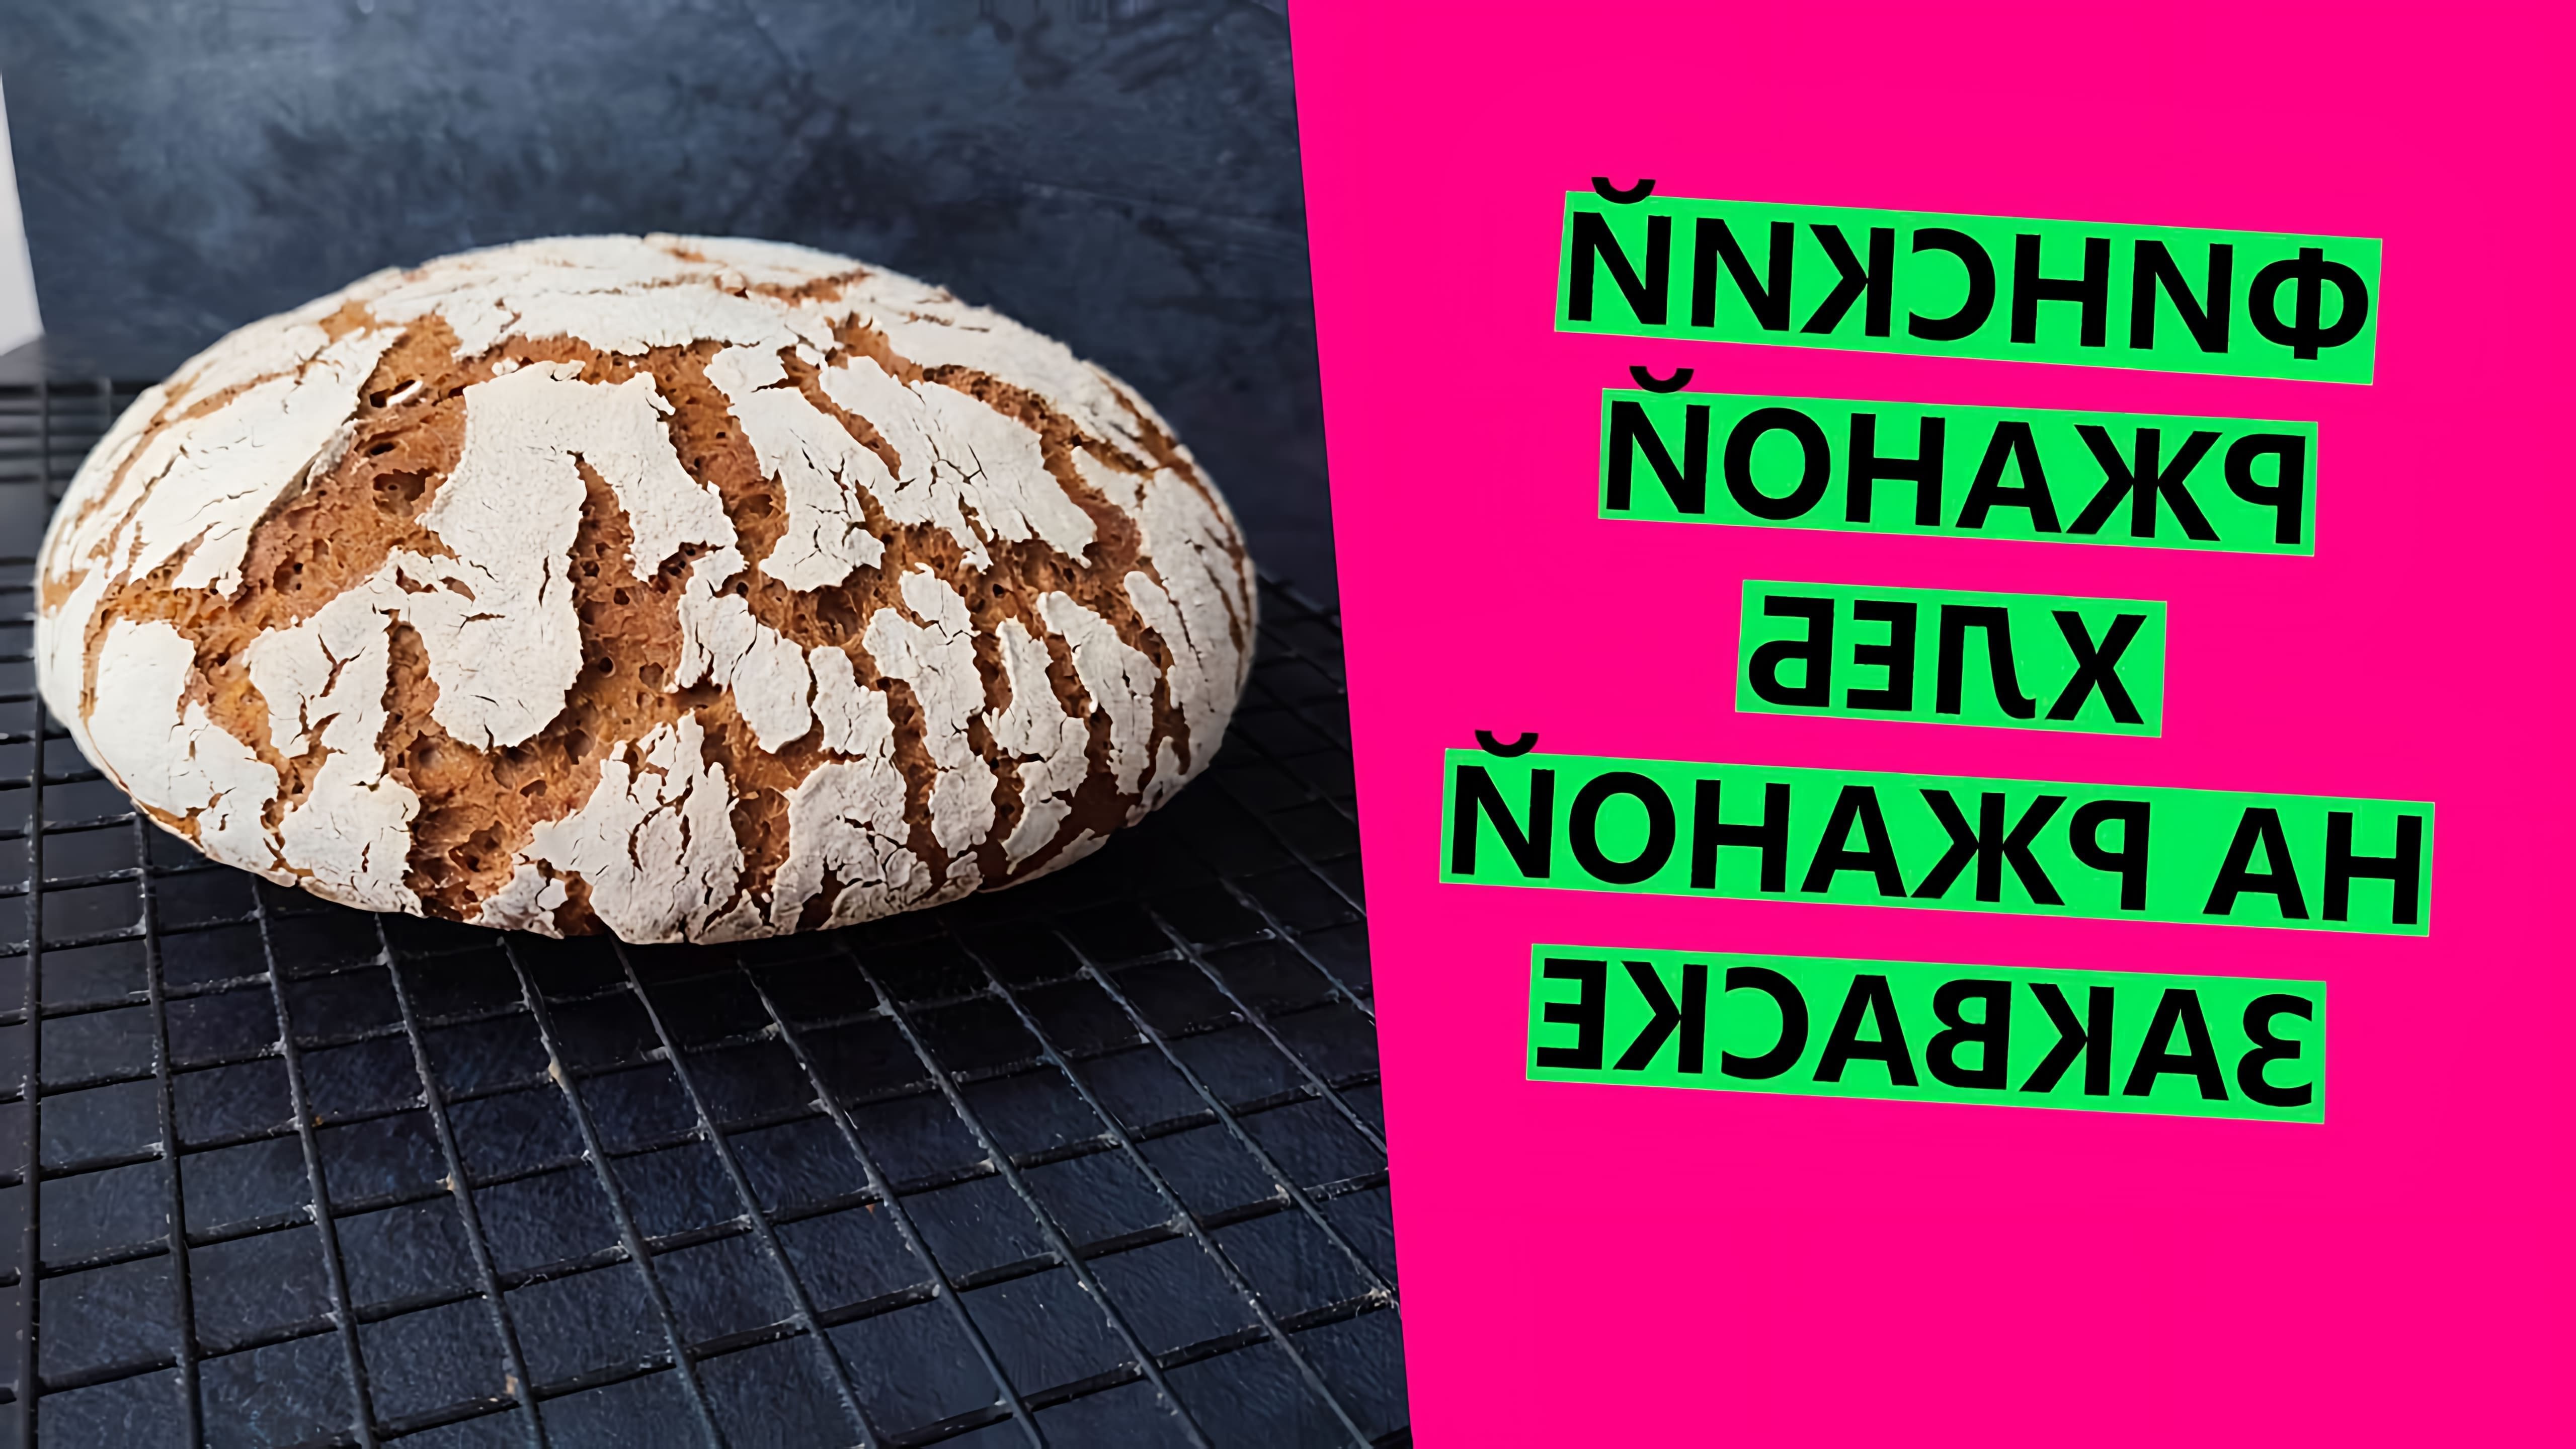 В этом видео демонстрируется рецепт финского ржаного хлеба на закваске